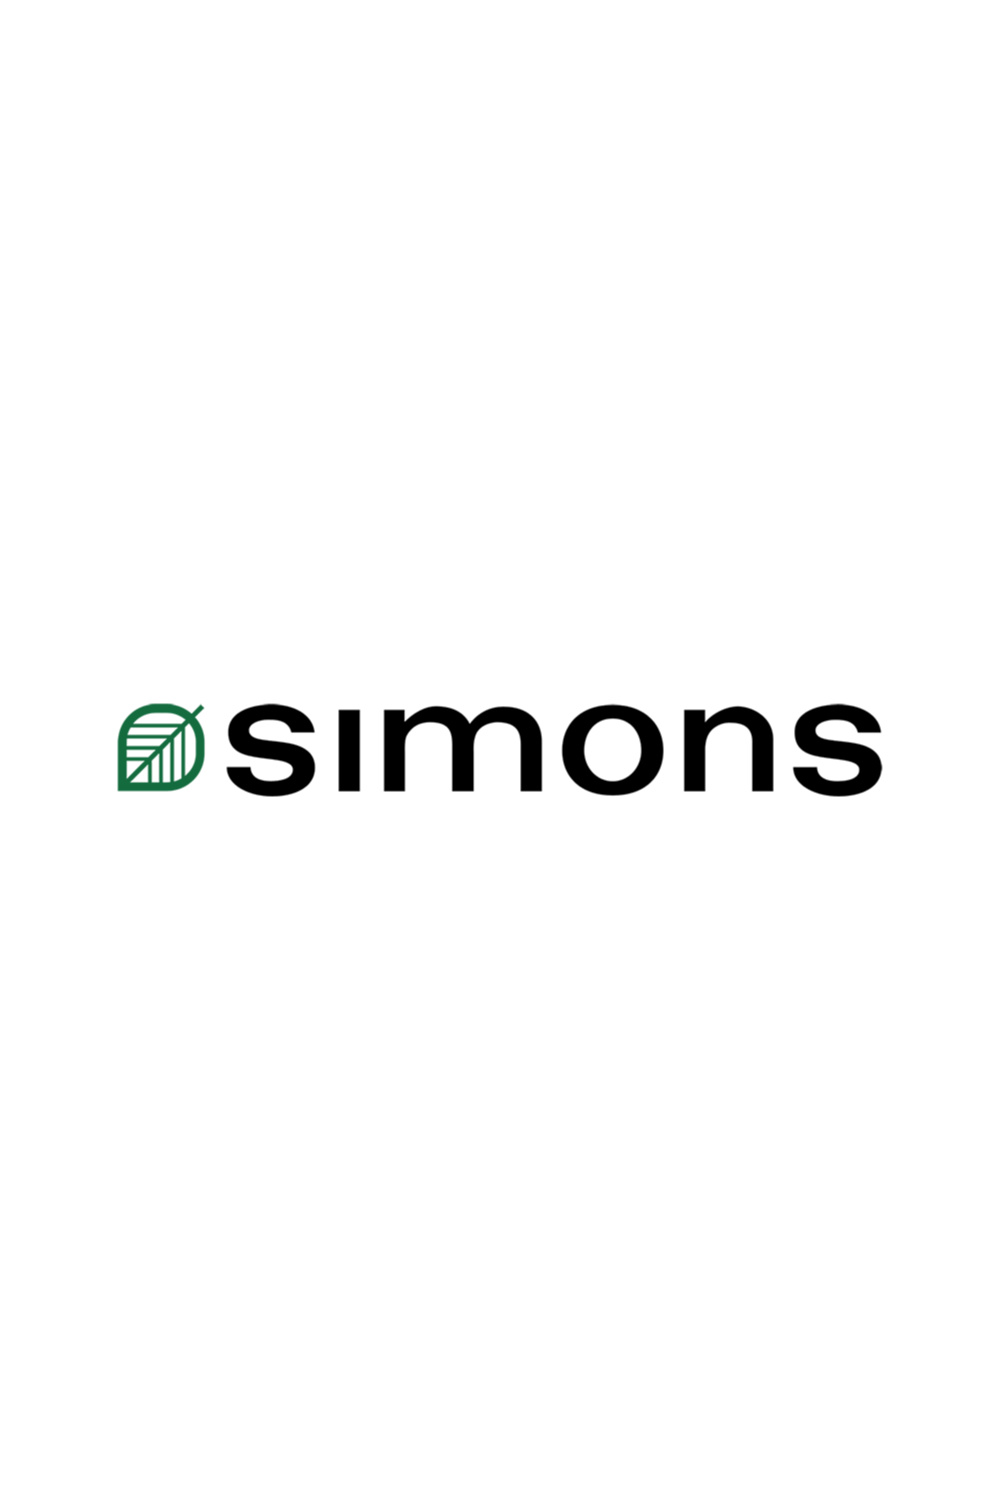 Simons - La Maison Simons